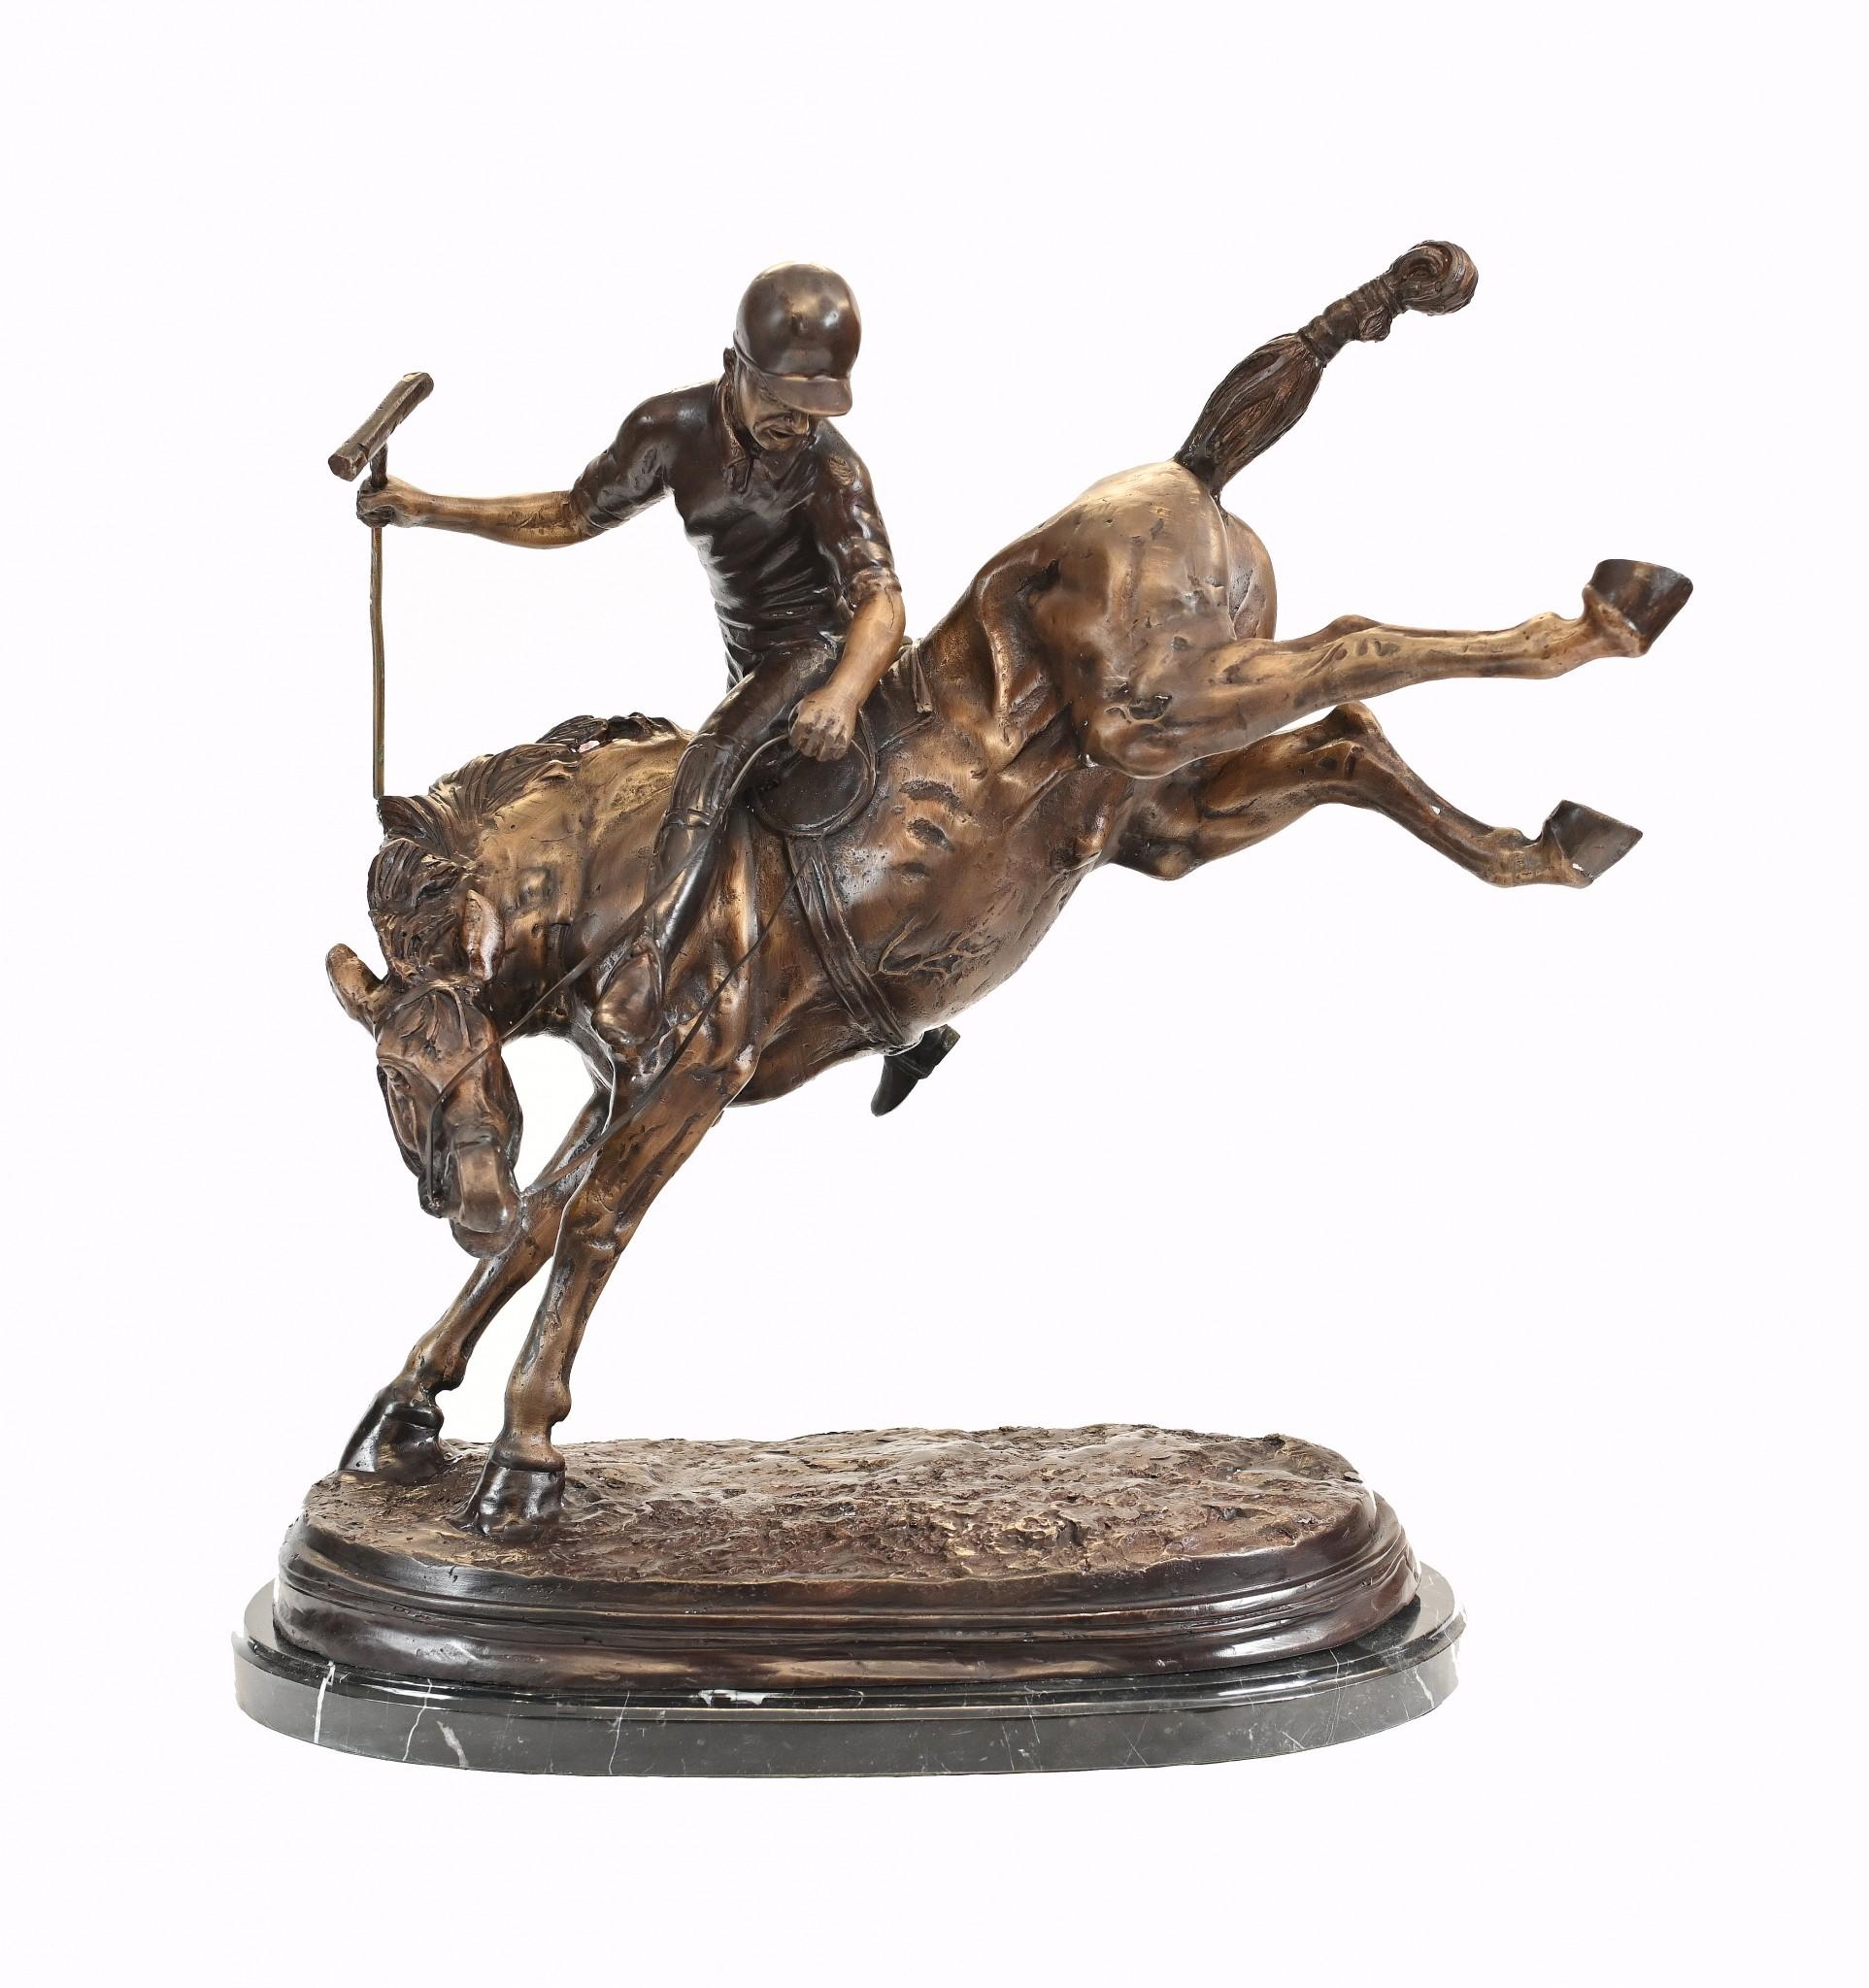 Stunning English Bronze-Statue zeigt Polo-Spieler auf einem bockenden Bronze
Steht in über zwei Meter hoch, so eine beeindruckende Arbeit
Die Patina auf der Bronze ist hervorragend und dies ist bereit, zu zeigen
Keine Anzeichen von Schäden oder